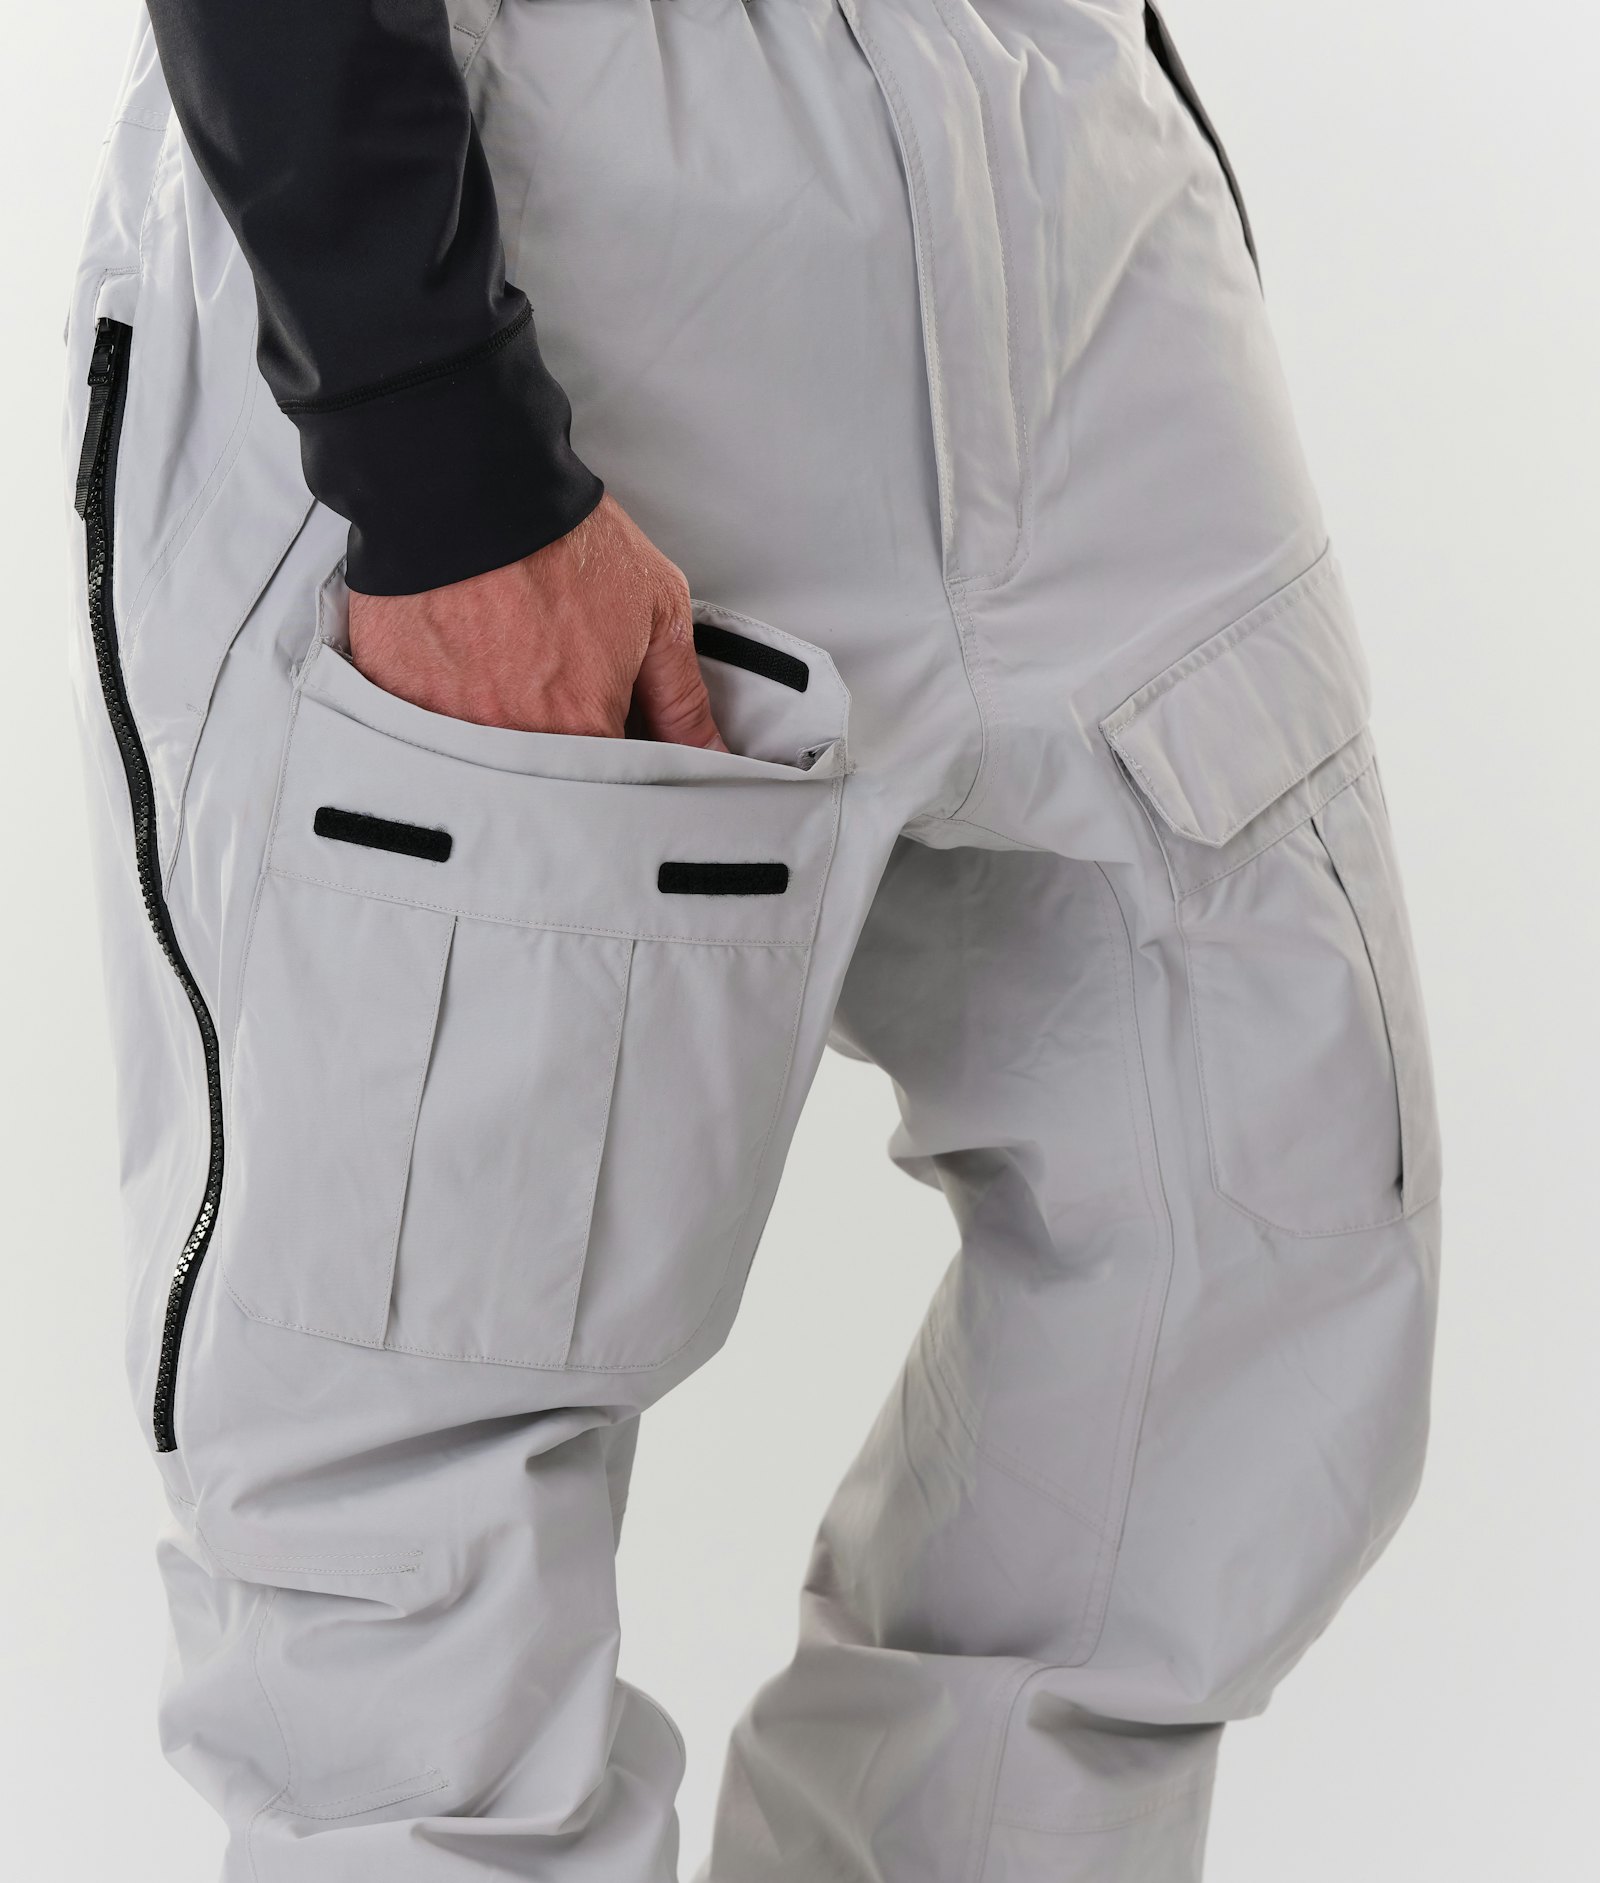 Antek 2020 Spodnie Snowboardowe Mężczyźni Light Grey